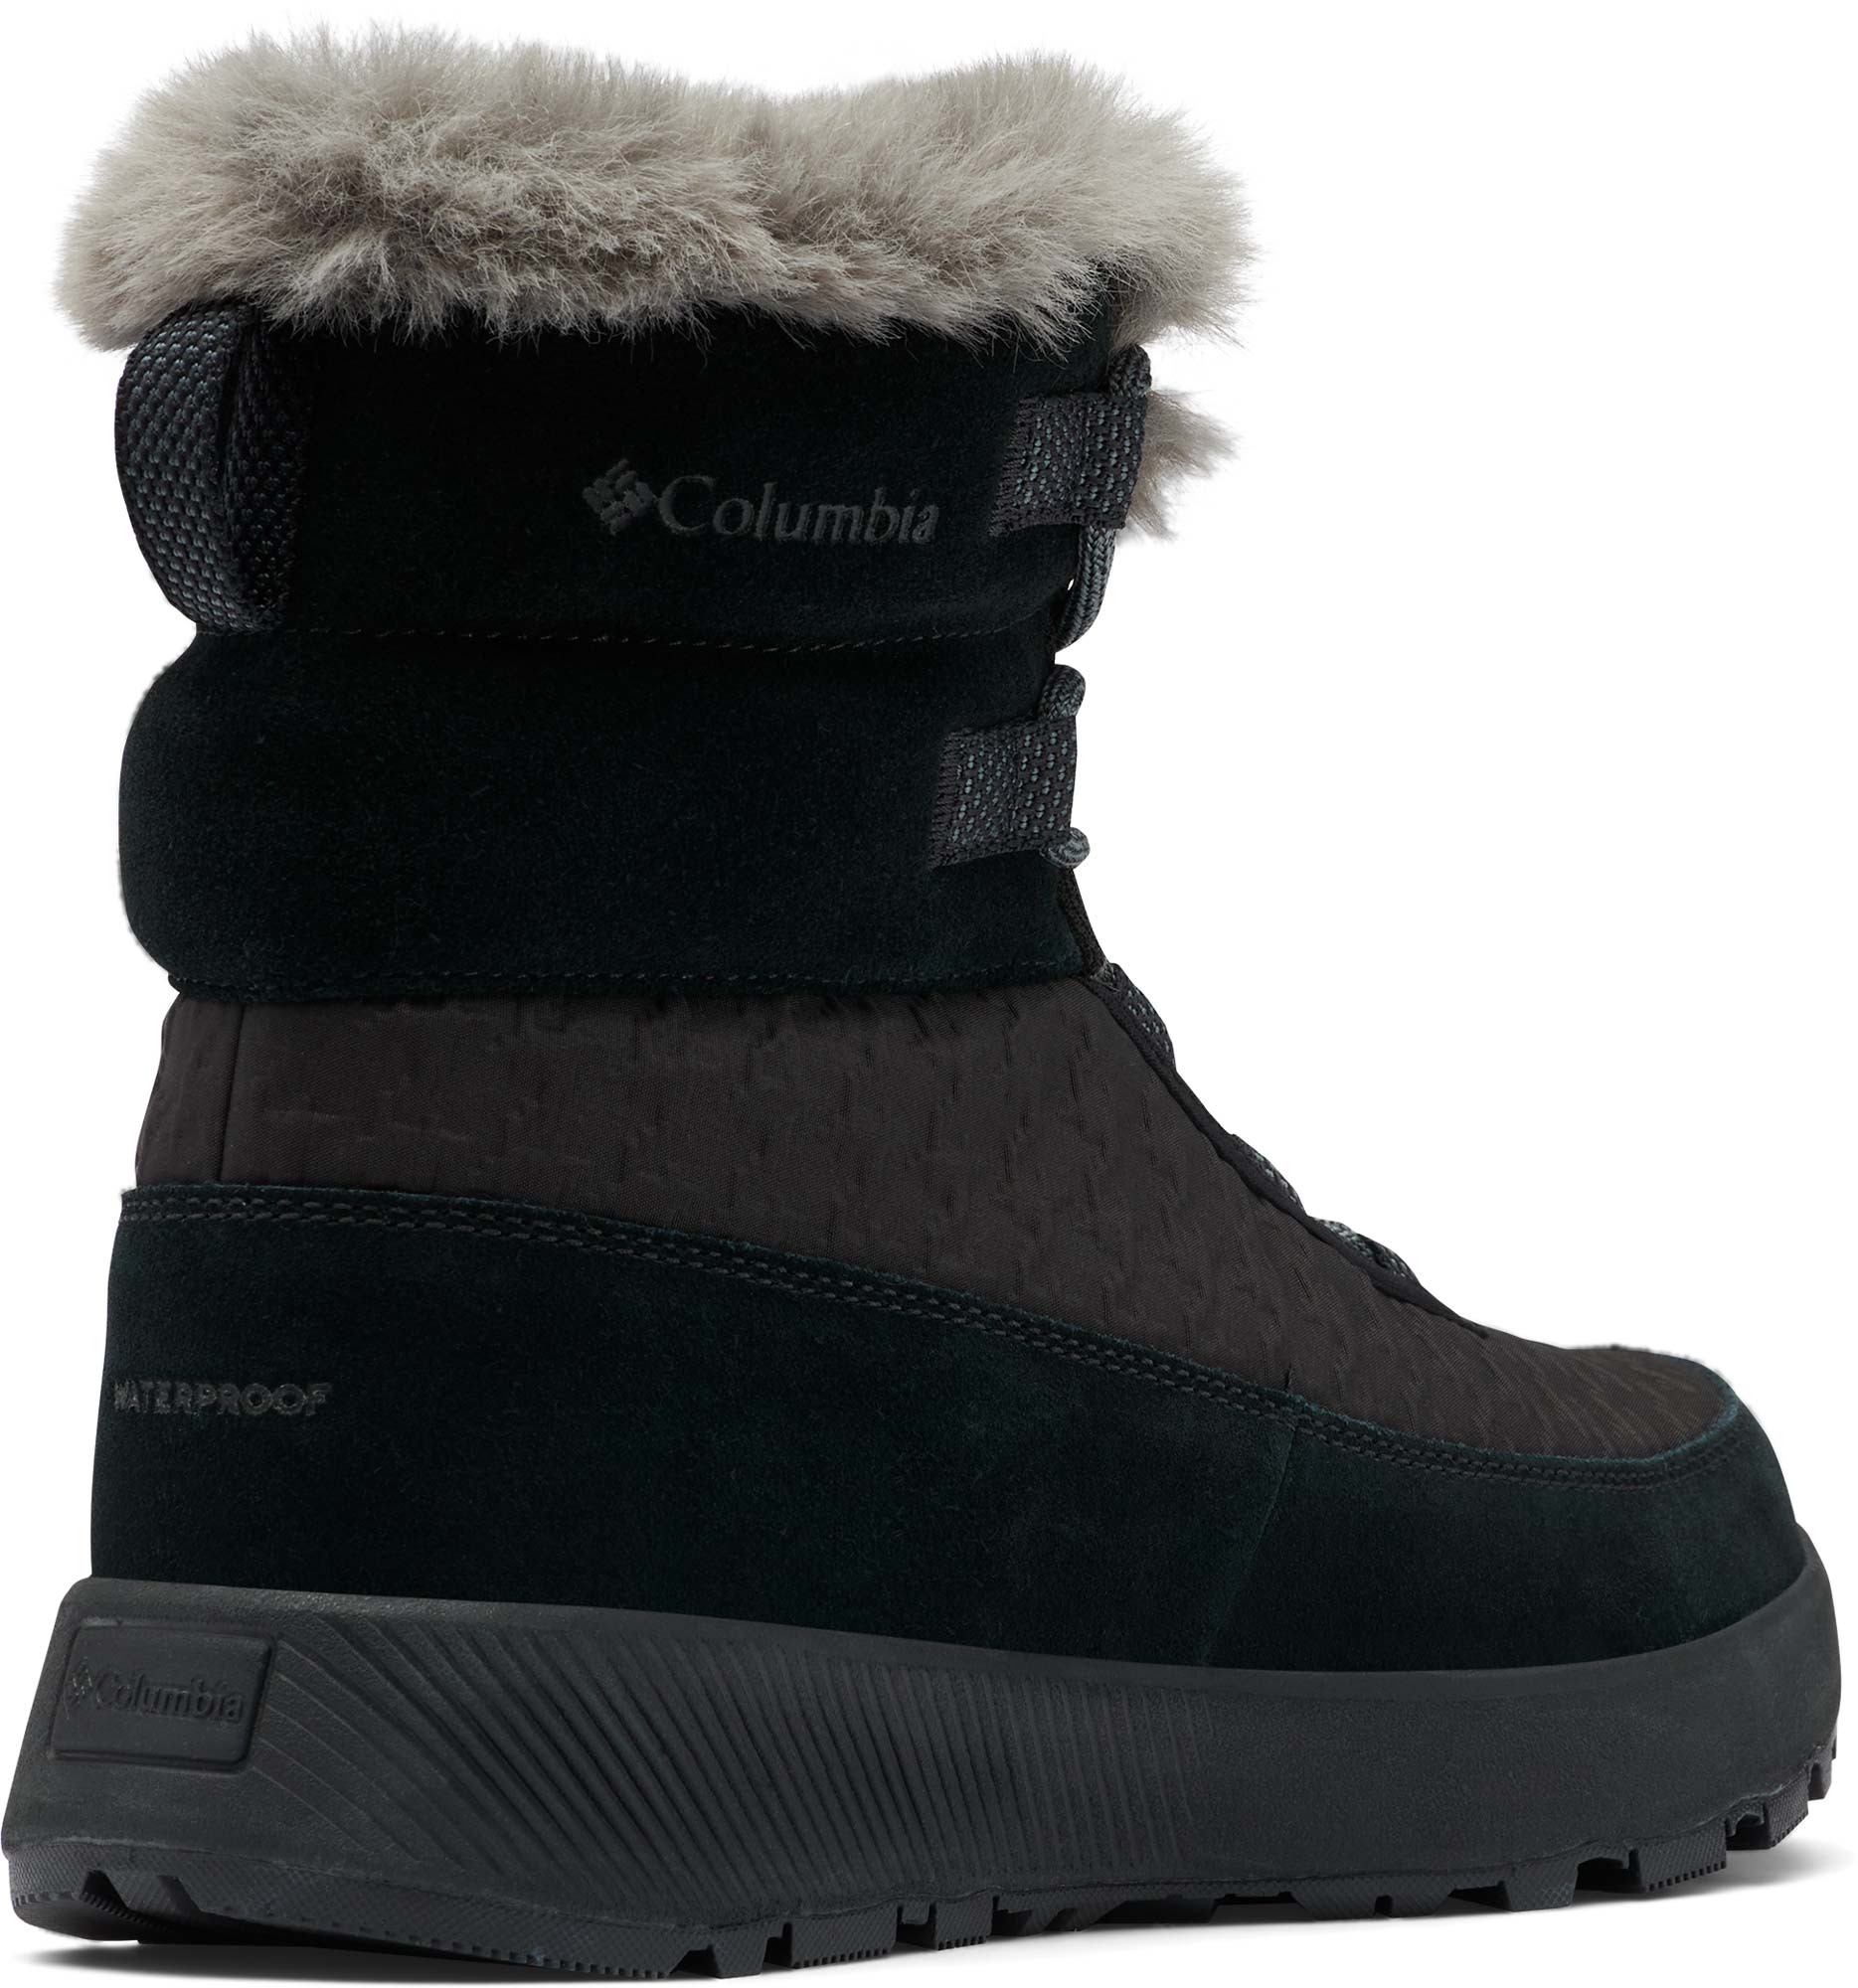 Women's winter boots